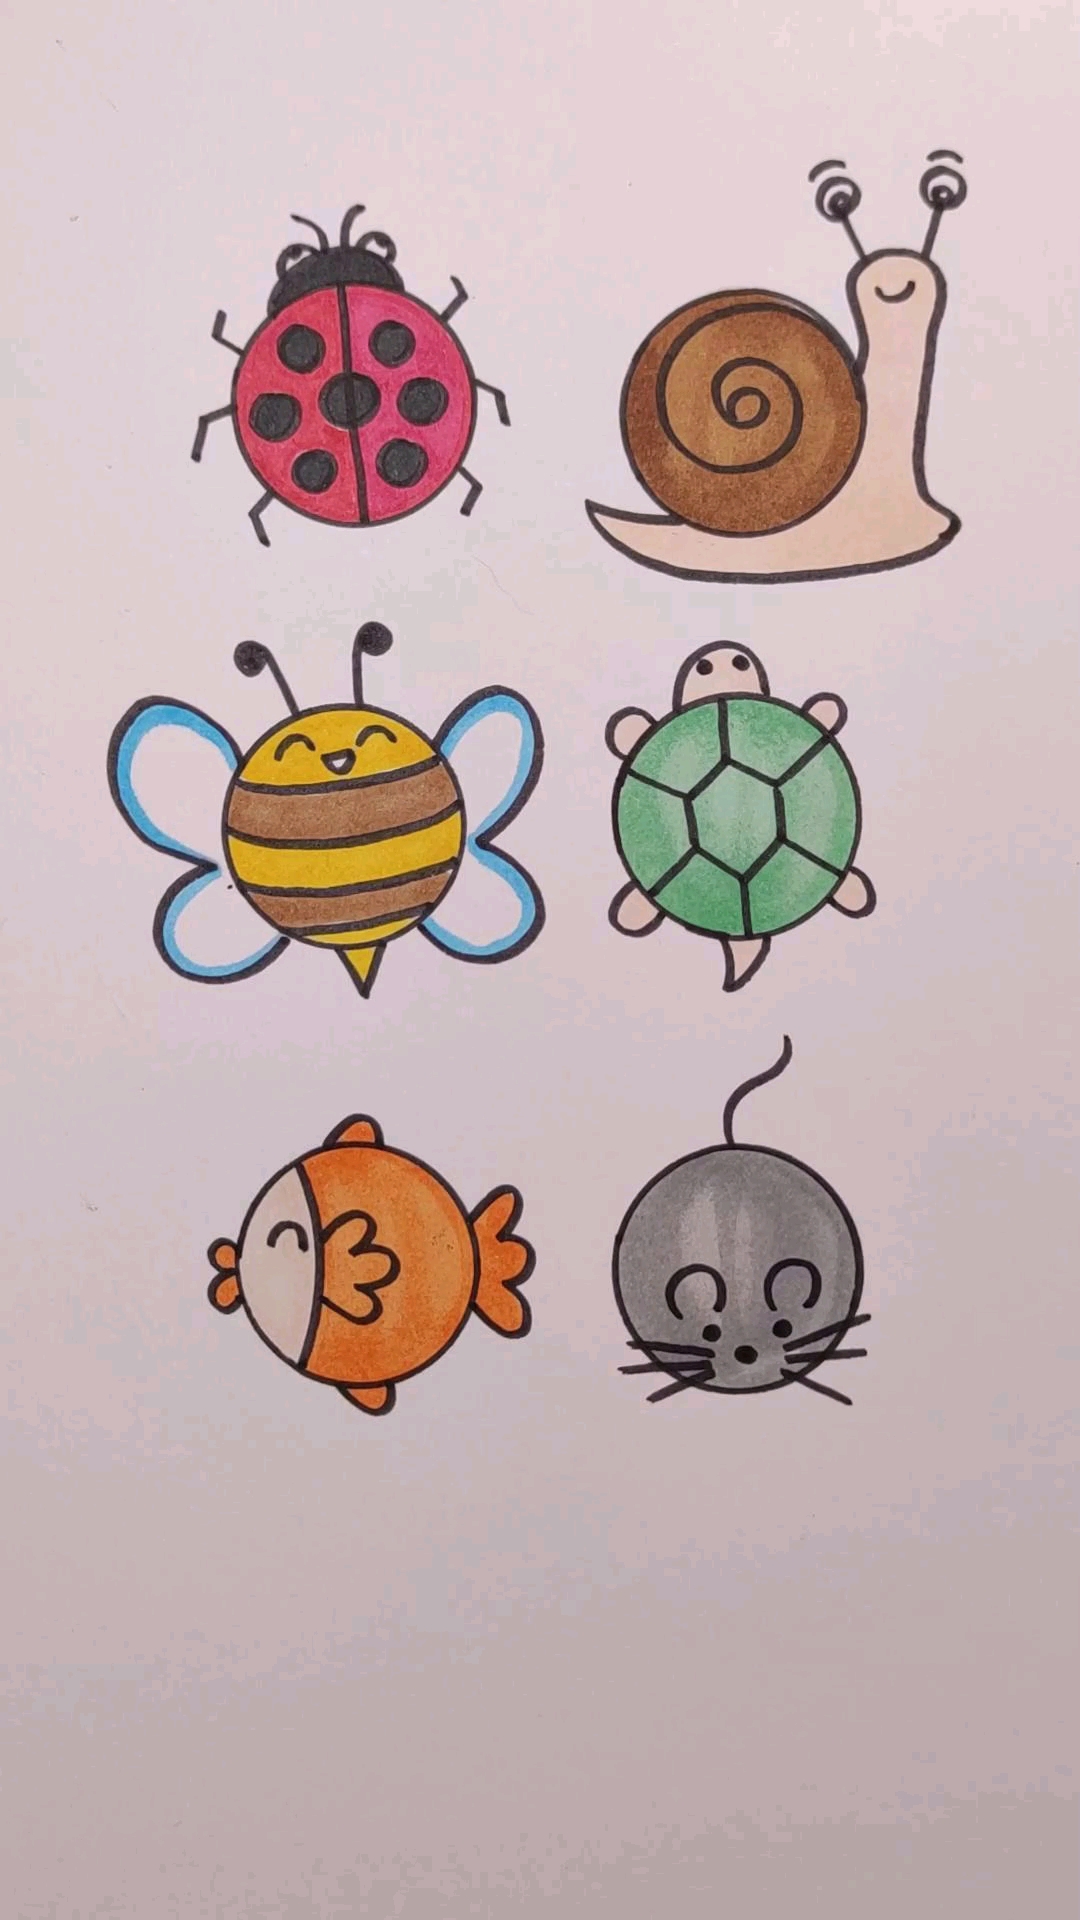 用圆画各种小动物,你会画几个?